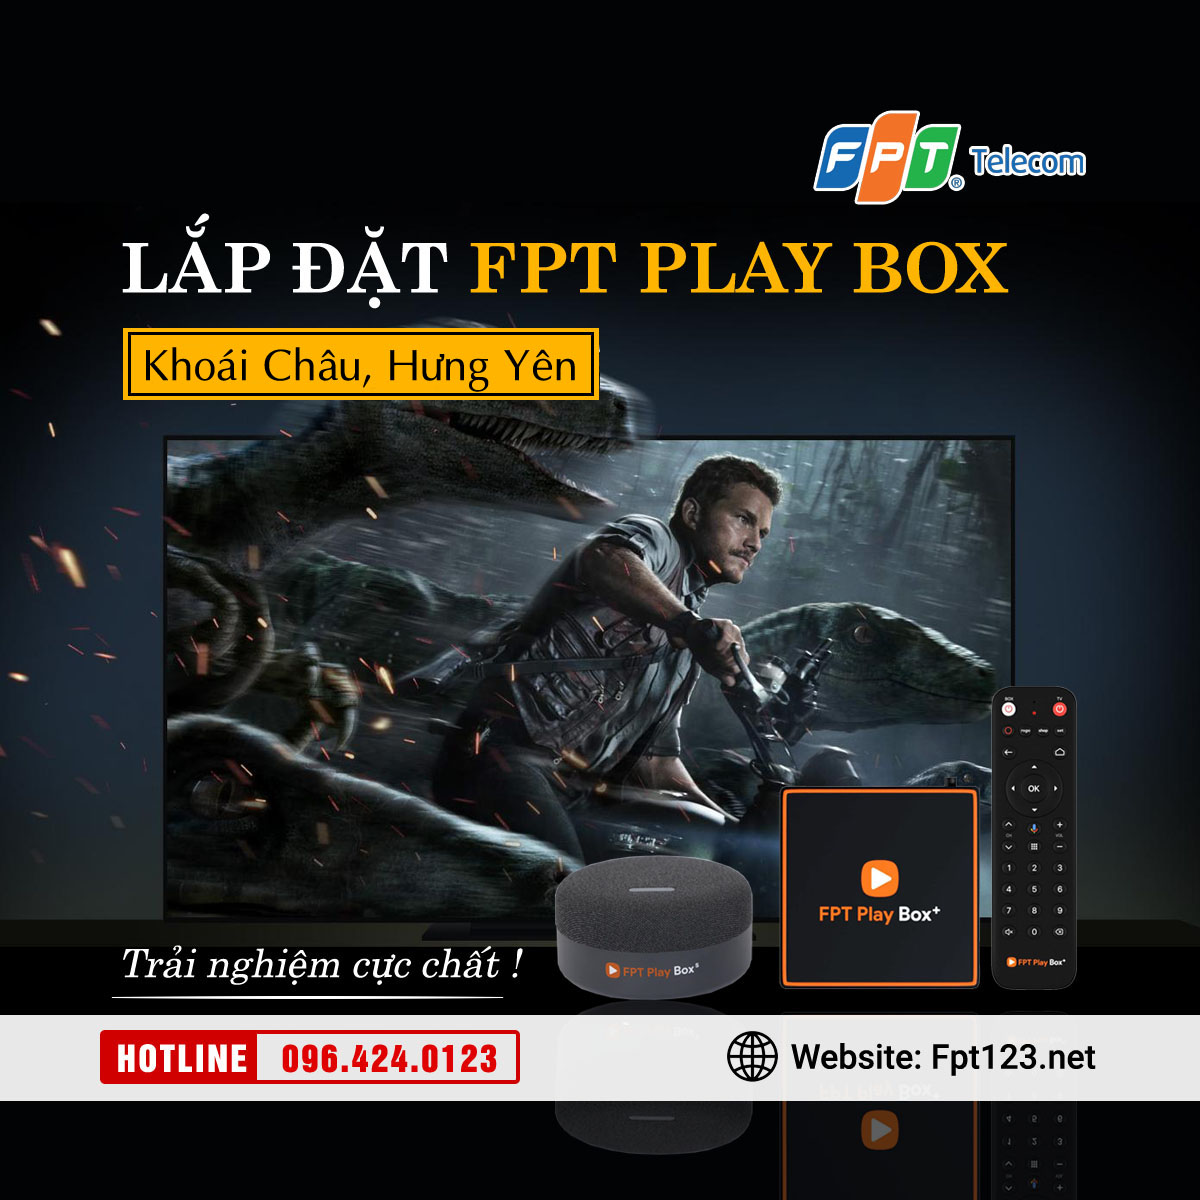 Lắp đặt FPT Play Box Khoái Châu, Hưng Yên